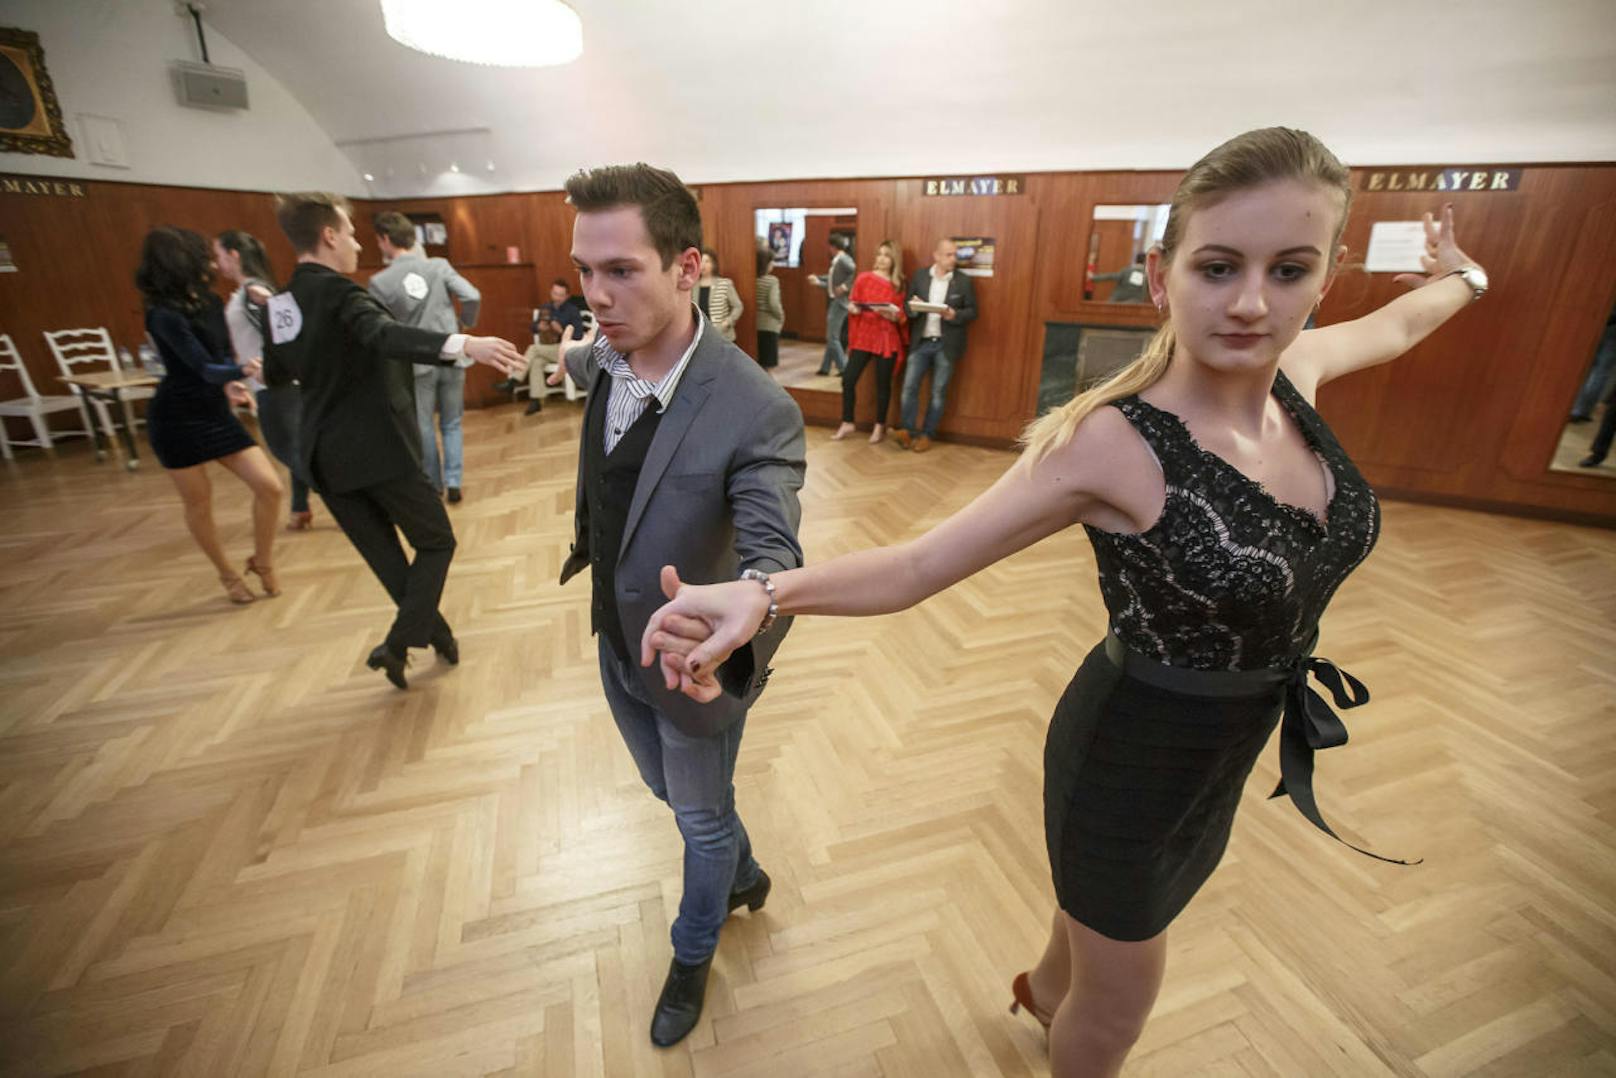 100 Tanzpaare traten am Sonntag zum Vortanzen in der Tanzschule Elmayer an, um bei der Eröffnungsshow am 10. Juni im Rathaus dabei sein zu können.